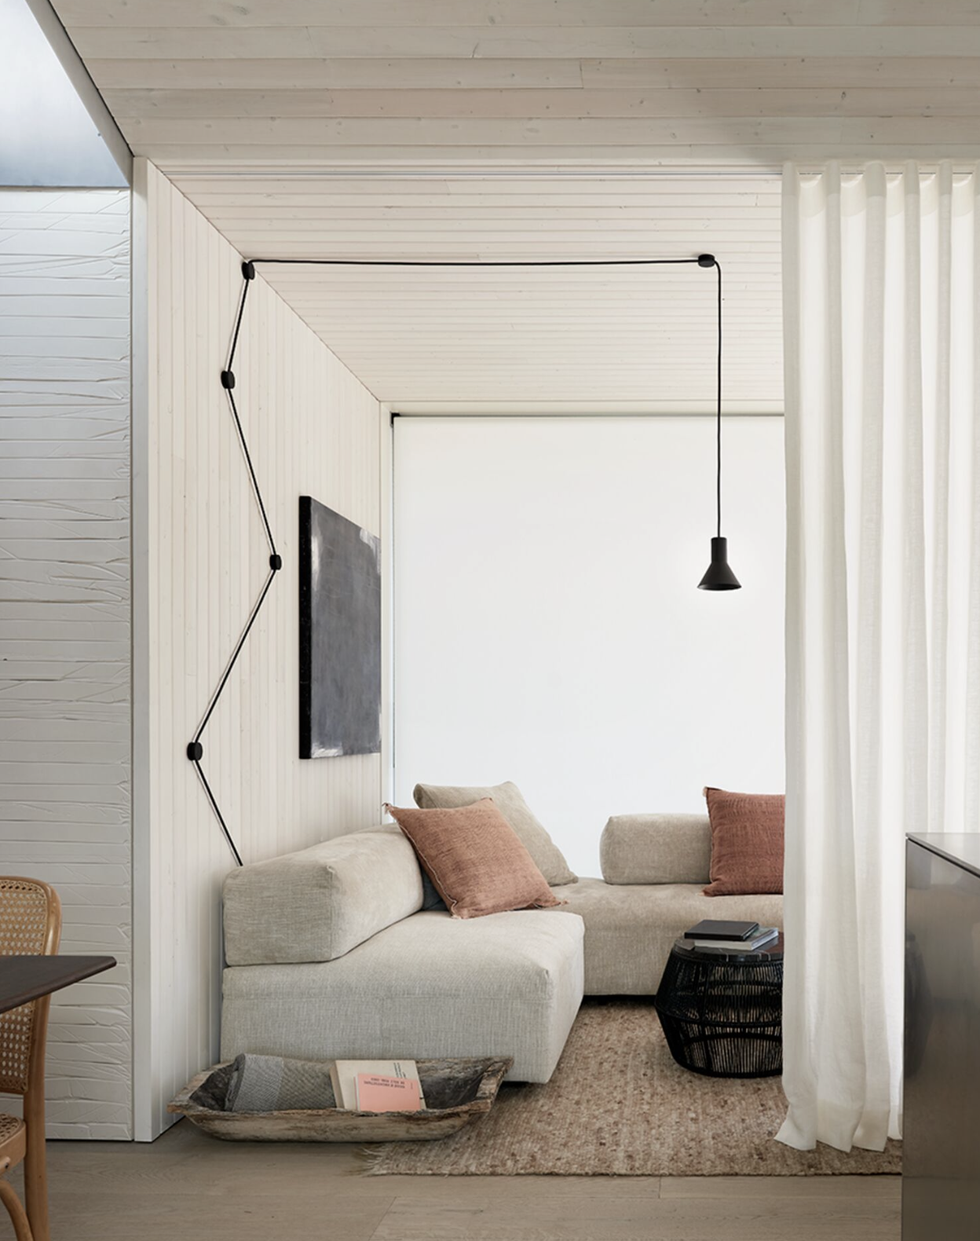 Get To Know About Modern Minimalist Interior Design